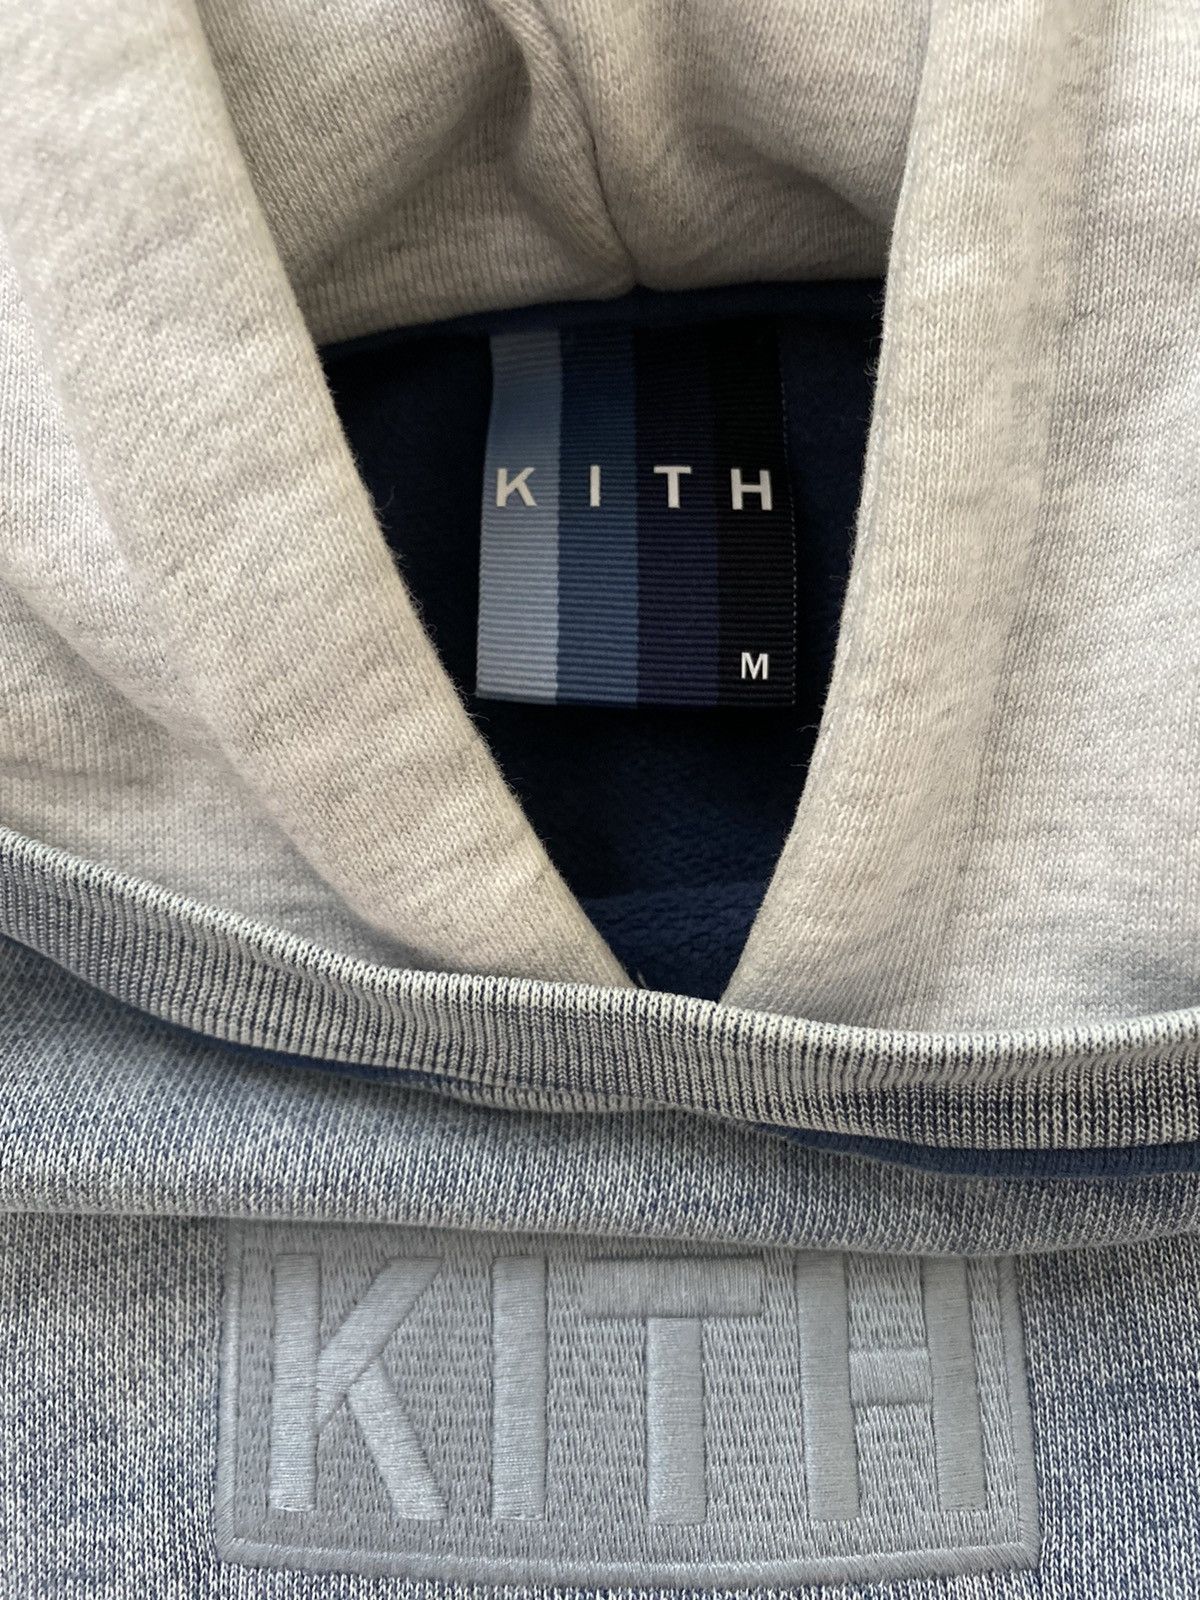 Kith Kith Hoodie - Light Indigo Size US M / EU 48-50 / 2 - 3 Preview